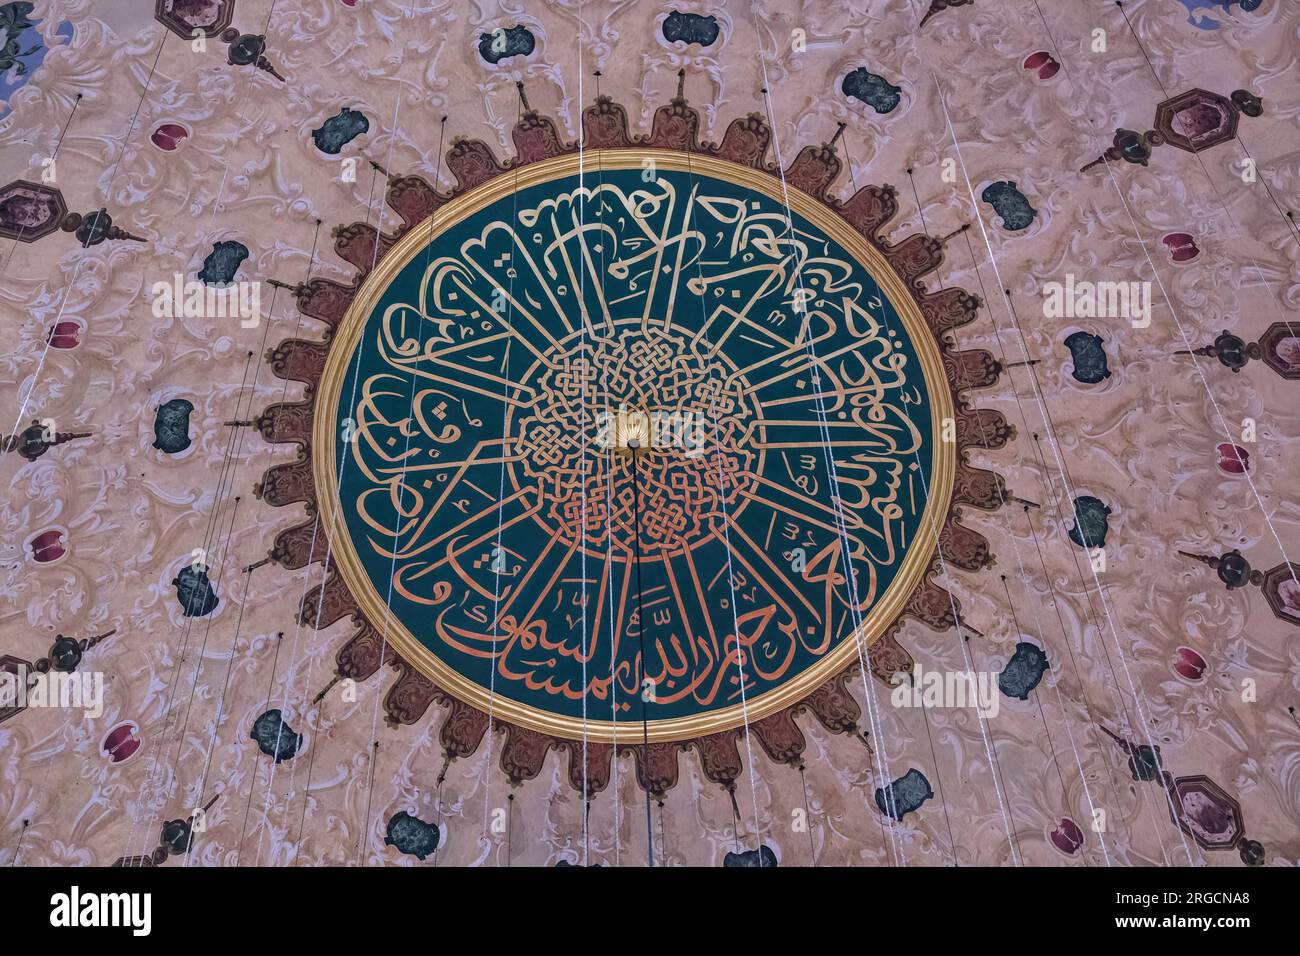 Istanbul, Turchia, Turkiye. Decorazione in calligrafia araba intorno alla Cupola centrale della Moschea di Solimano la magnifica Moschea di Solimano. Foto Stock